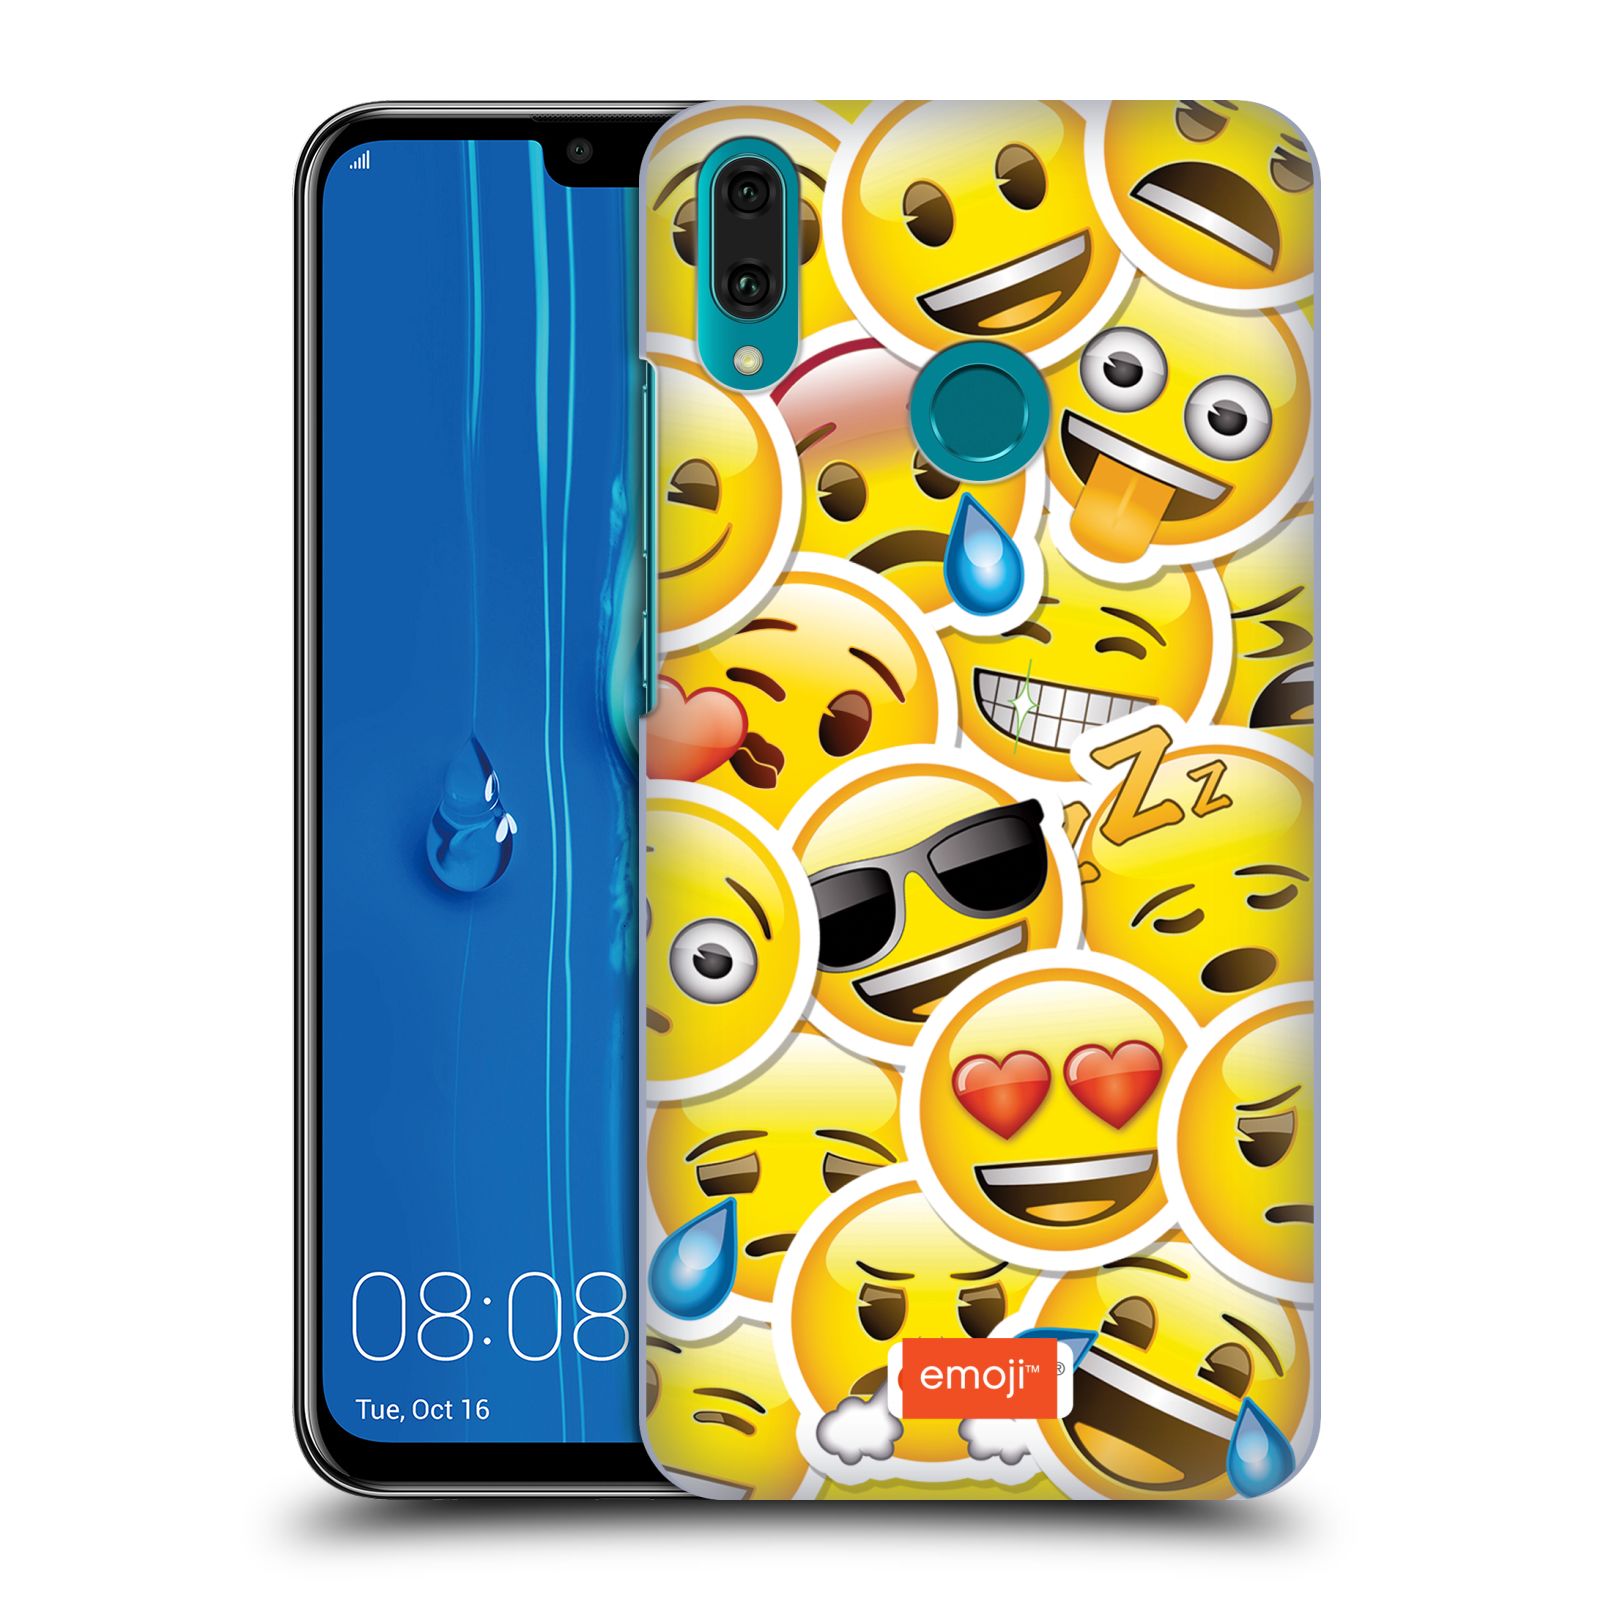 Pouzdro na mobil Huawei Y9 2019 - HEAD CASE - smajlík oficiální kryt EMOJI velcí smajlíci nálepky